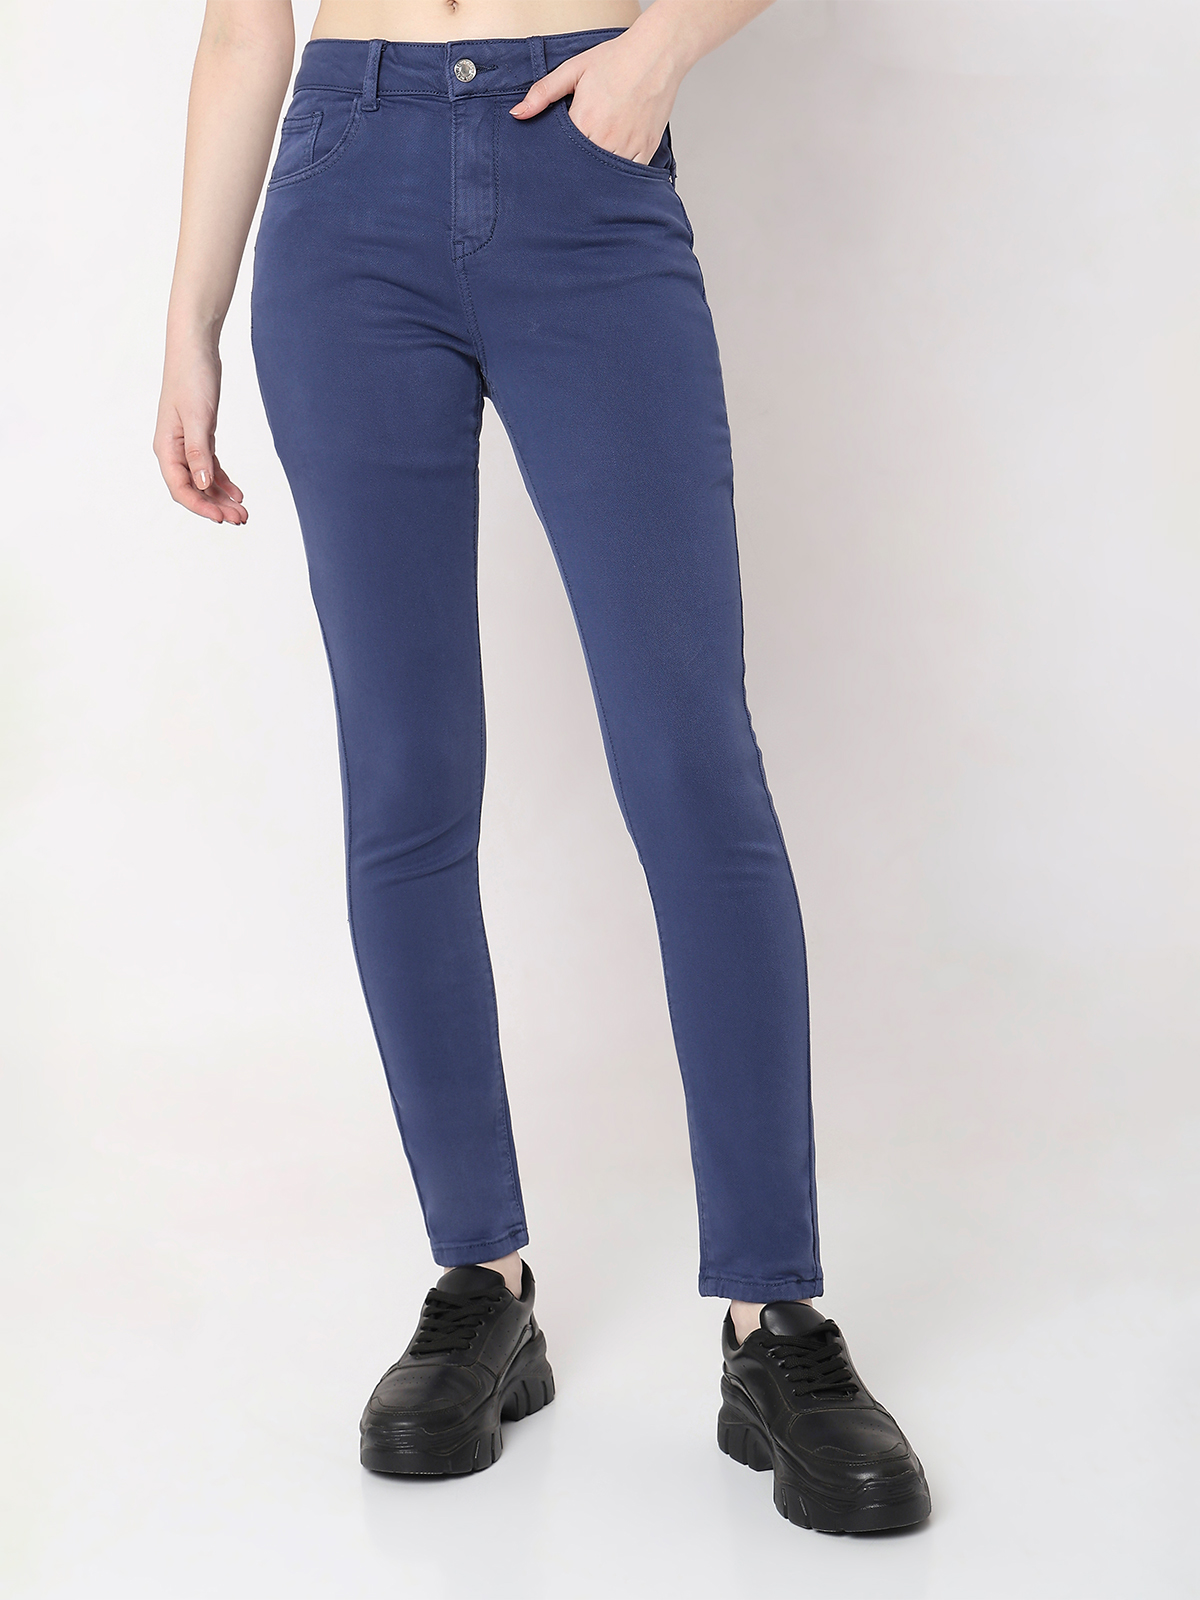 Good Lookin' Dark Wash Blue Sneak Peek Jeans | Boutique Jeans